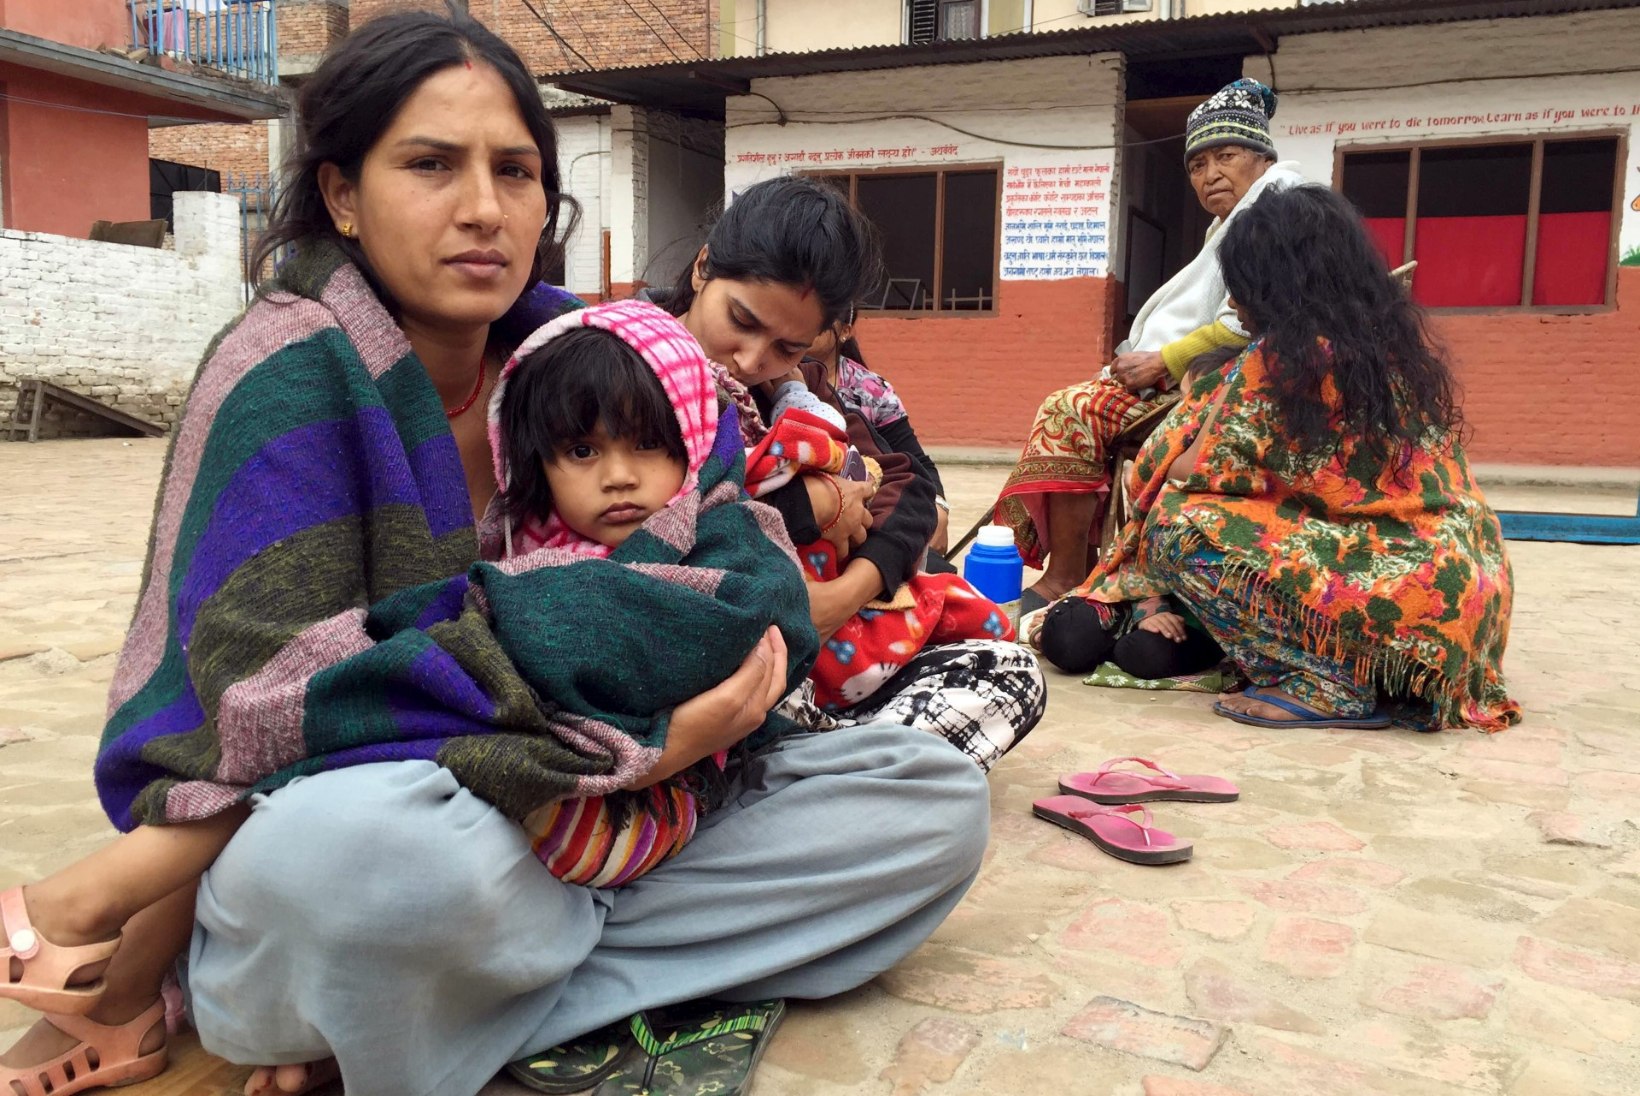 GALERII JA VIDEO | Nepali maavärinaohvrite arv on tõusnud üle 1300